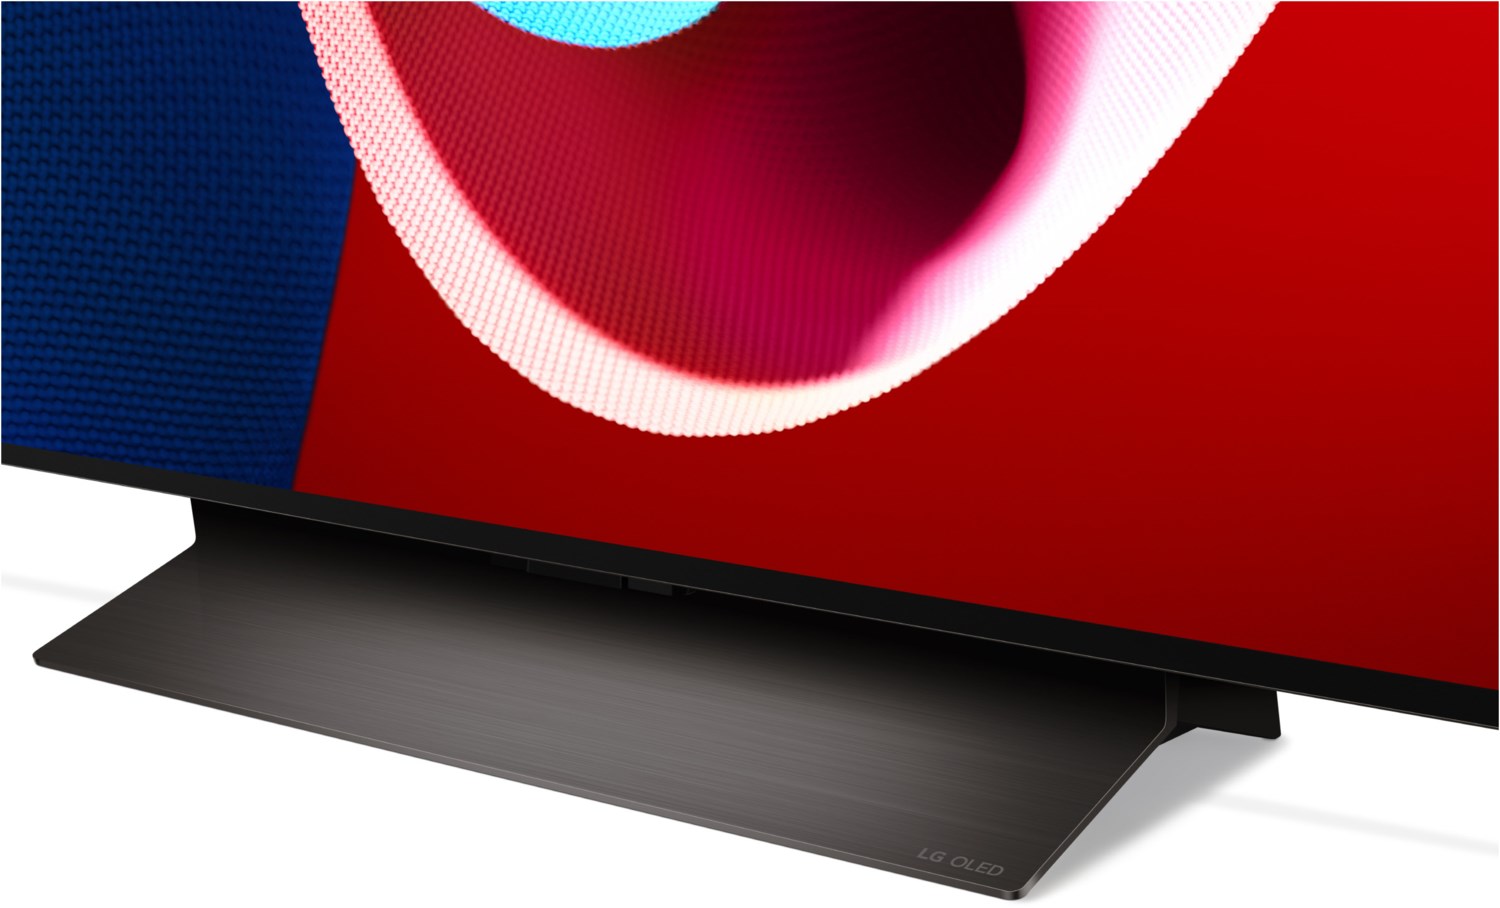 LG evo C4 OLED TV 195 cm (77 Zoll) 4K UHD Modell 2024 schwarz